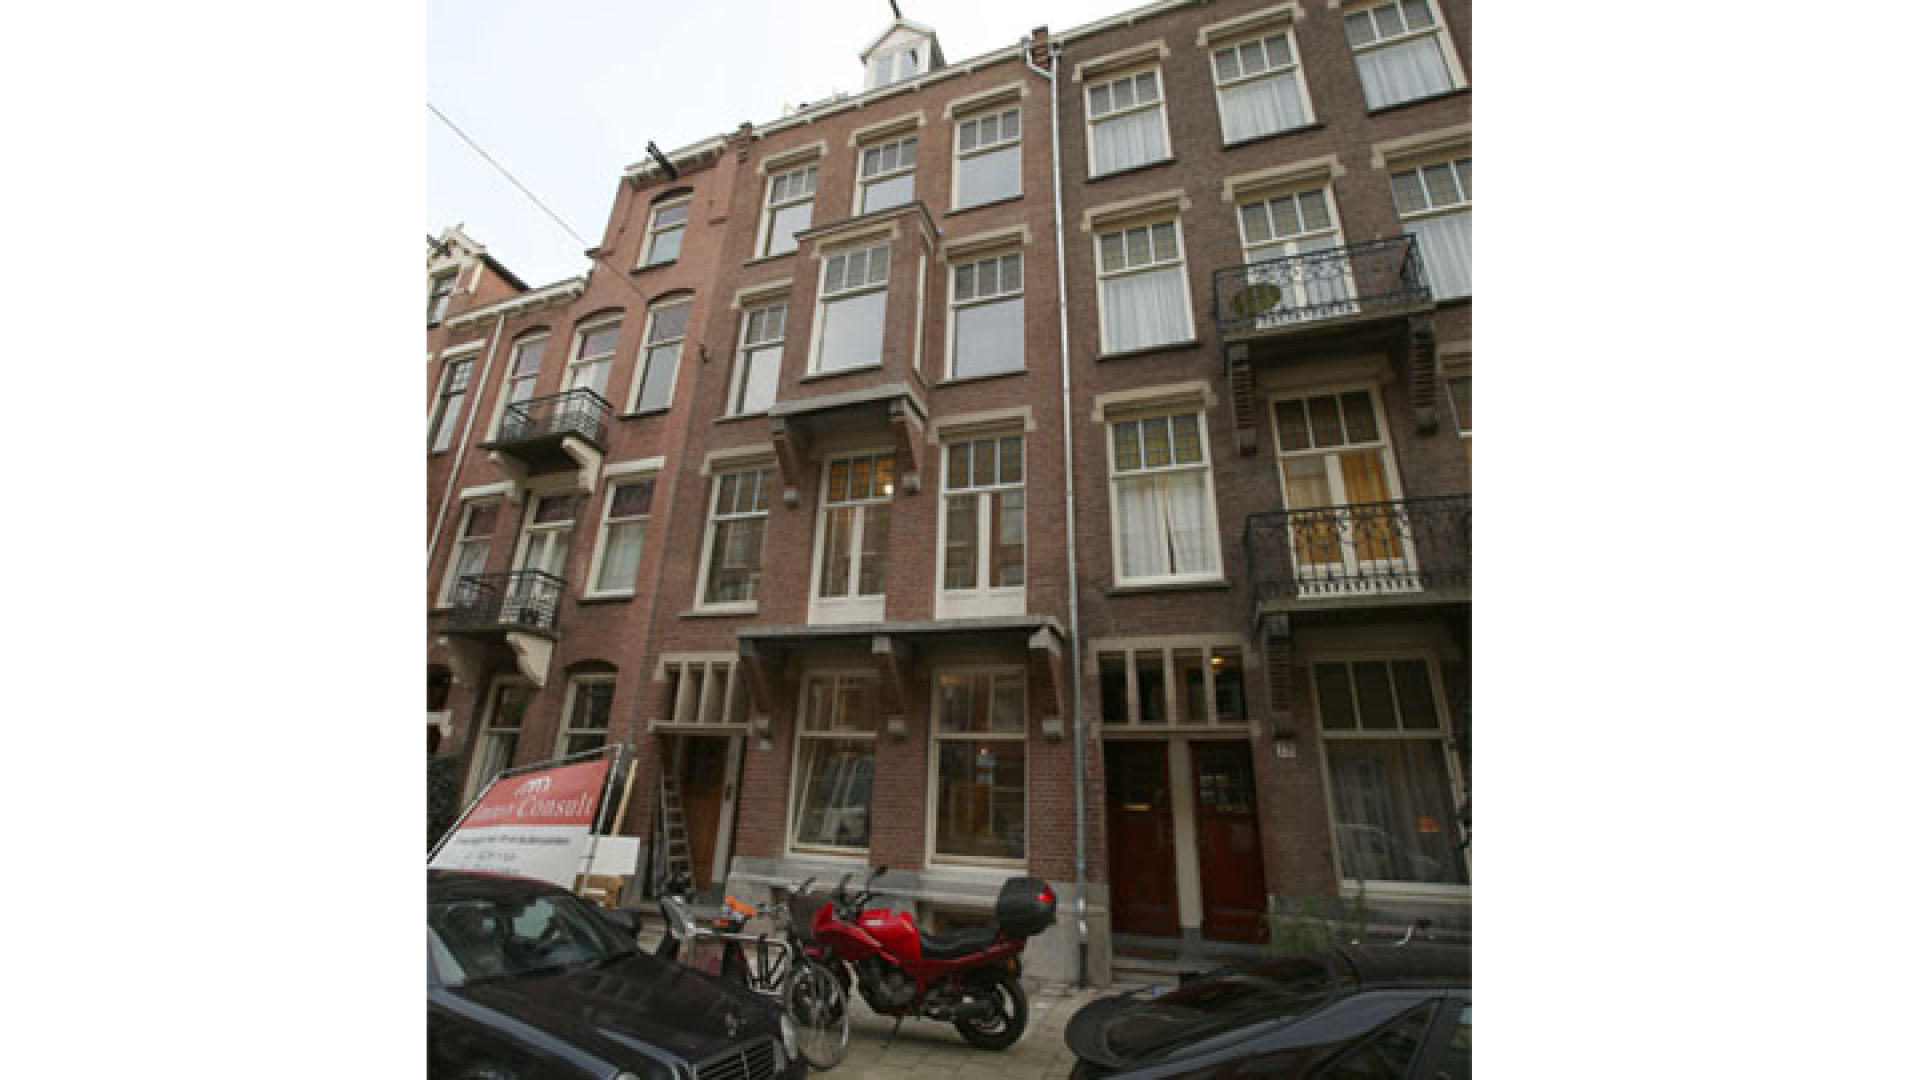 Doutzen Kroes koopt schitterend pand in Amsterdam Oud Zuid. Zie exclusieve foto's 8